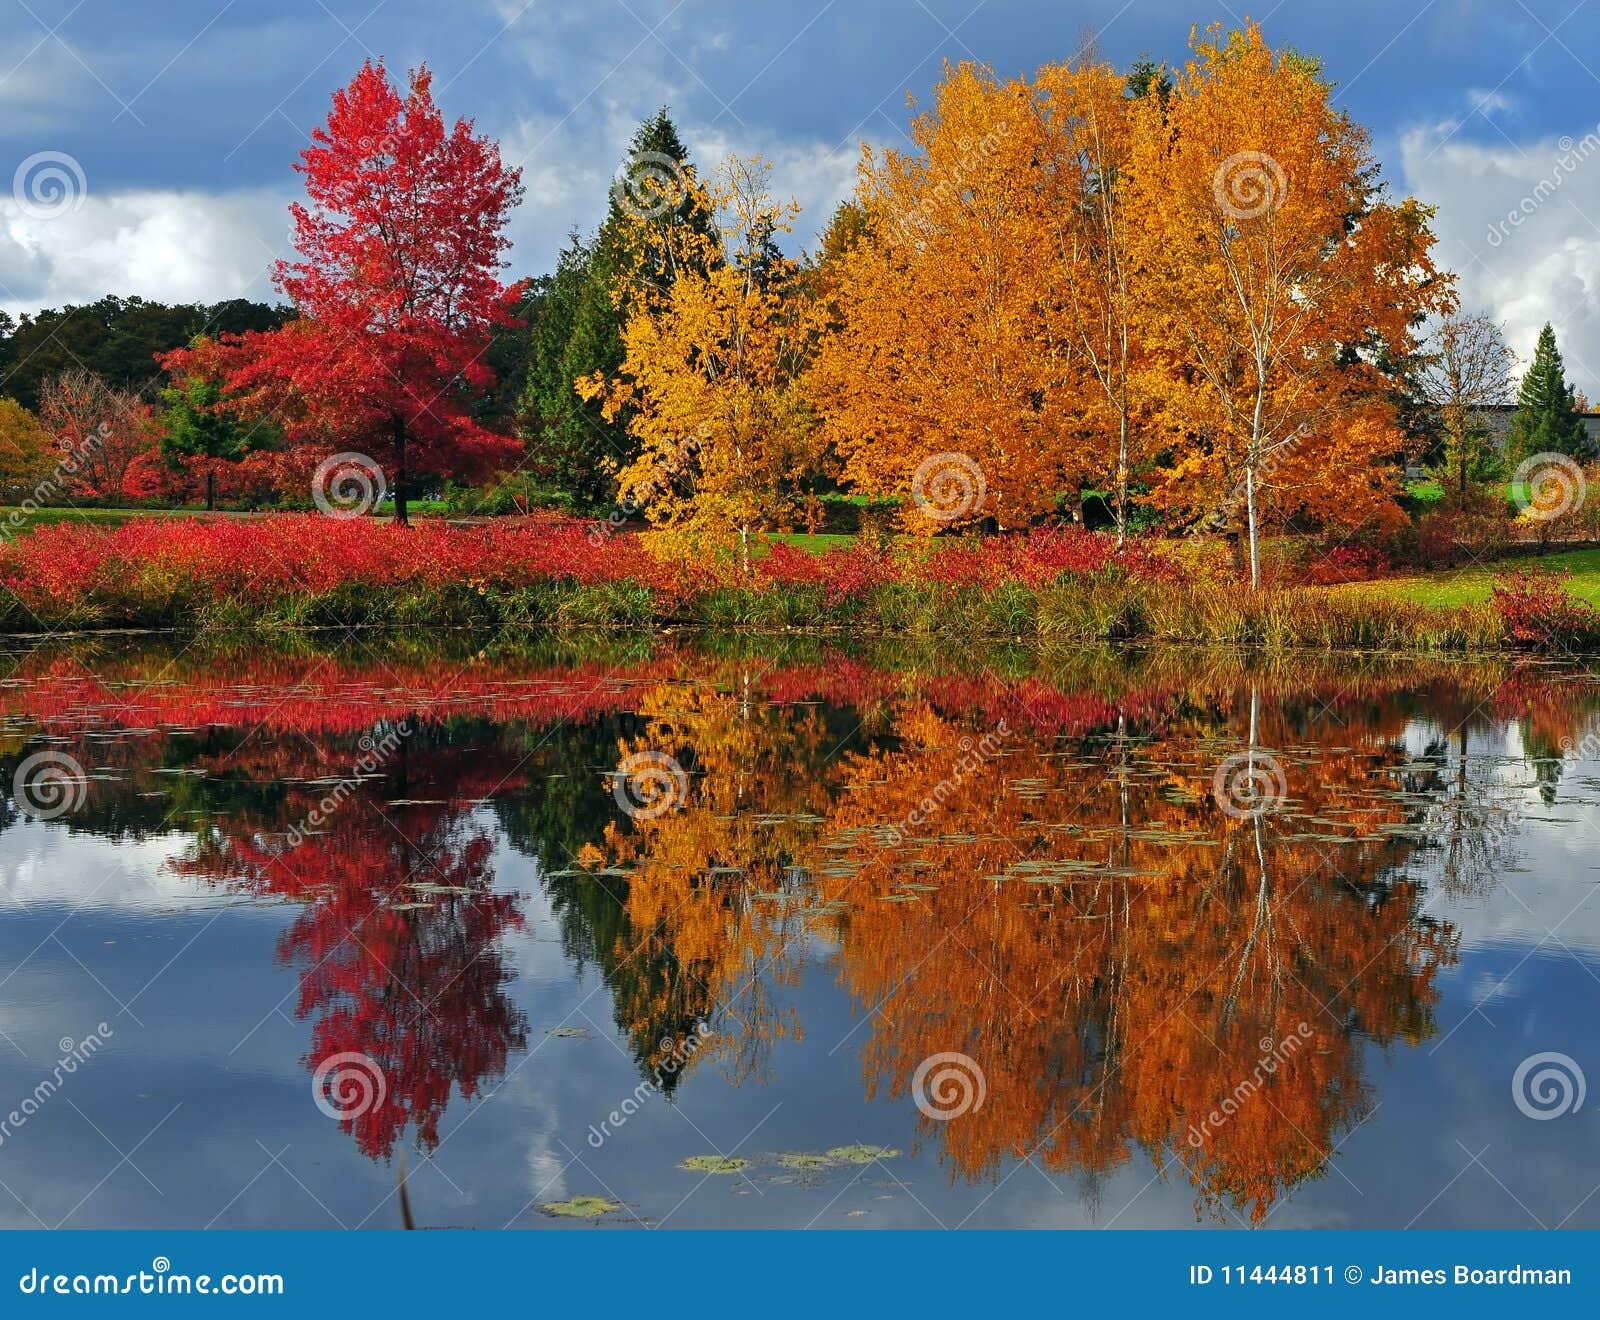 Reflexiones del otoño imagen de archivo. Imagen de paisaje - 11444811